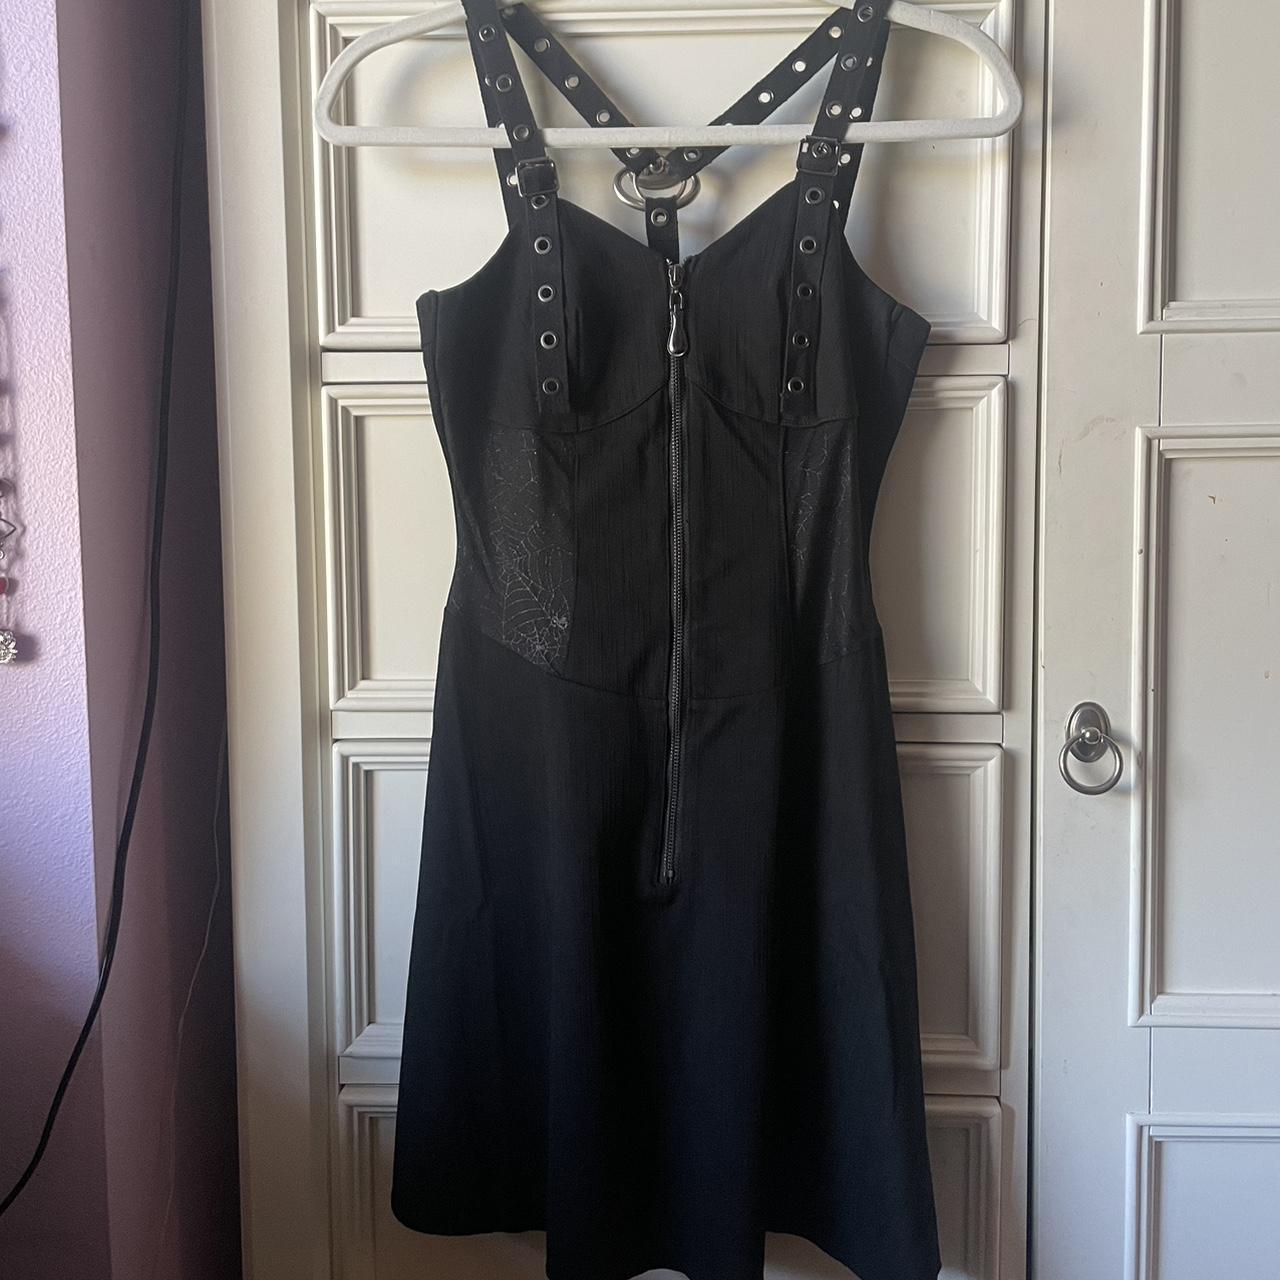 Alternative all black summer dress Size S Gives hour... - Depop